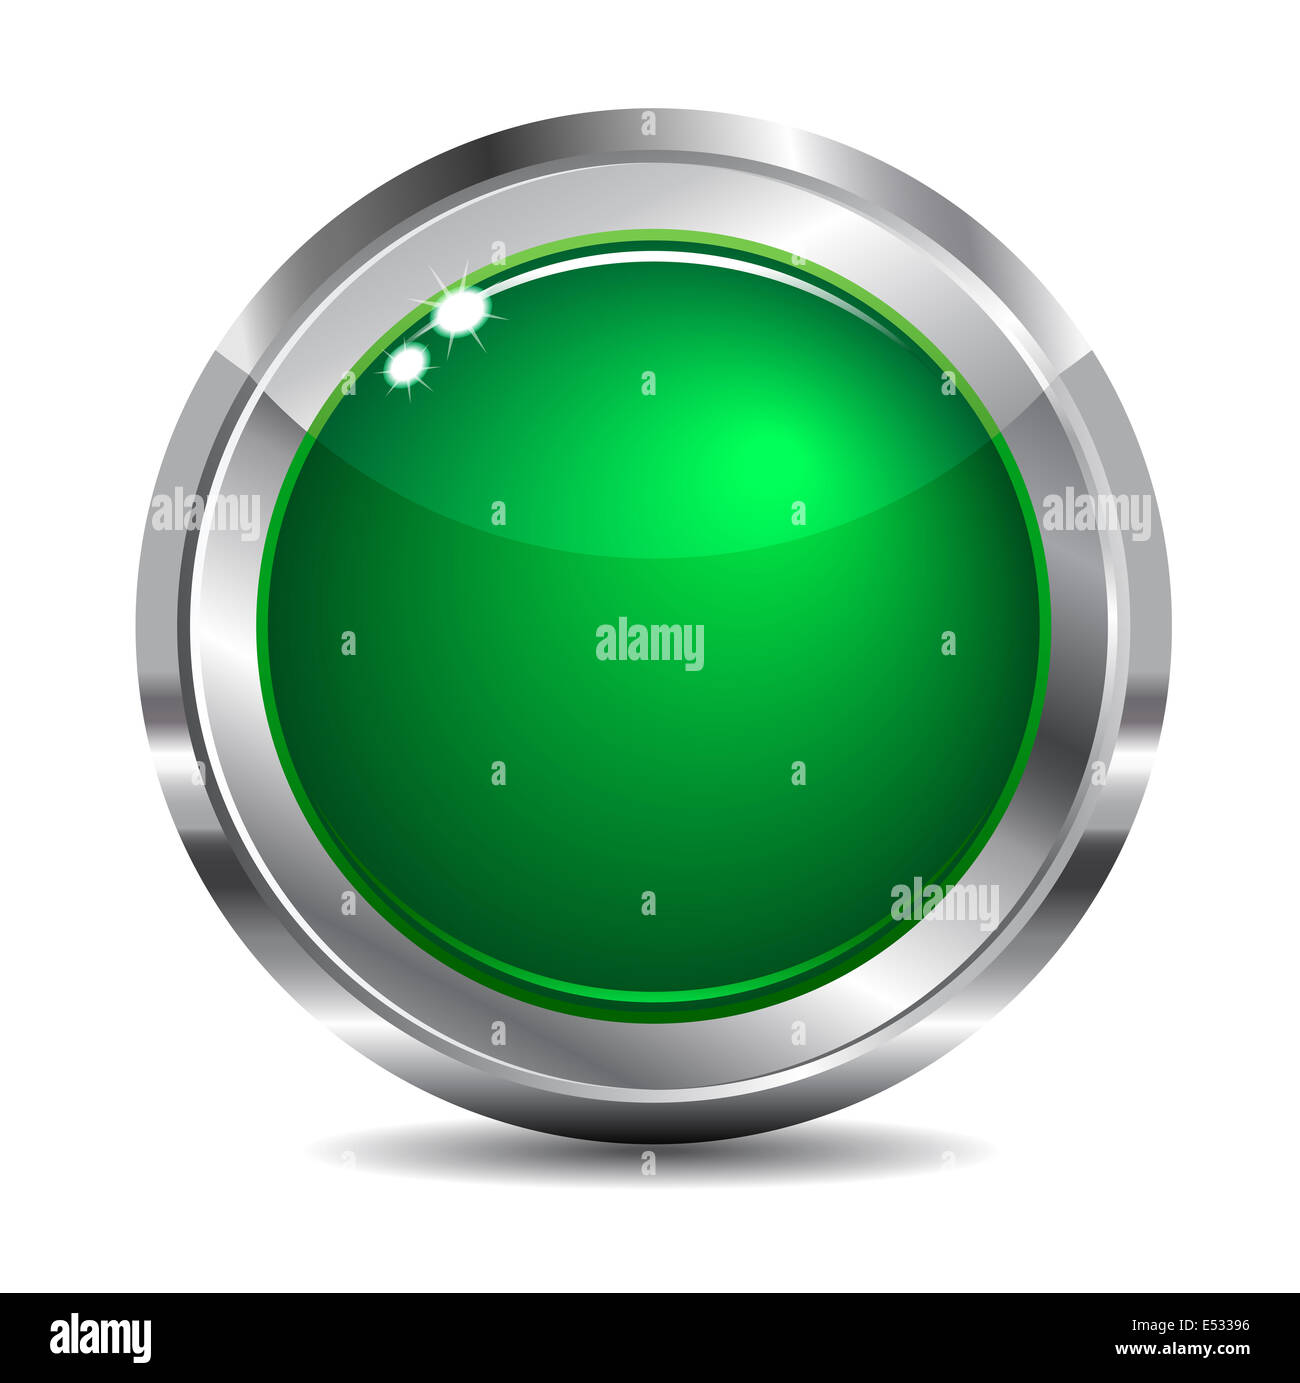 Chrome Easy Button Green Stock Vector